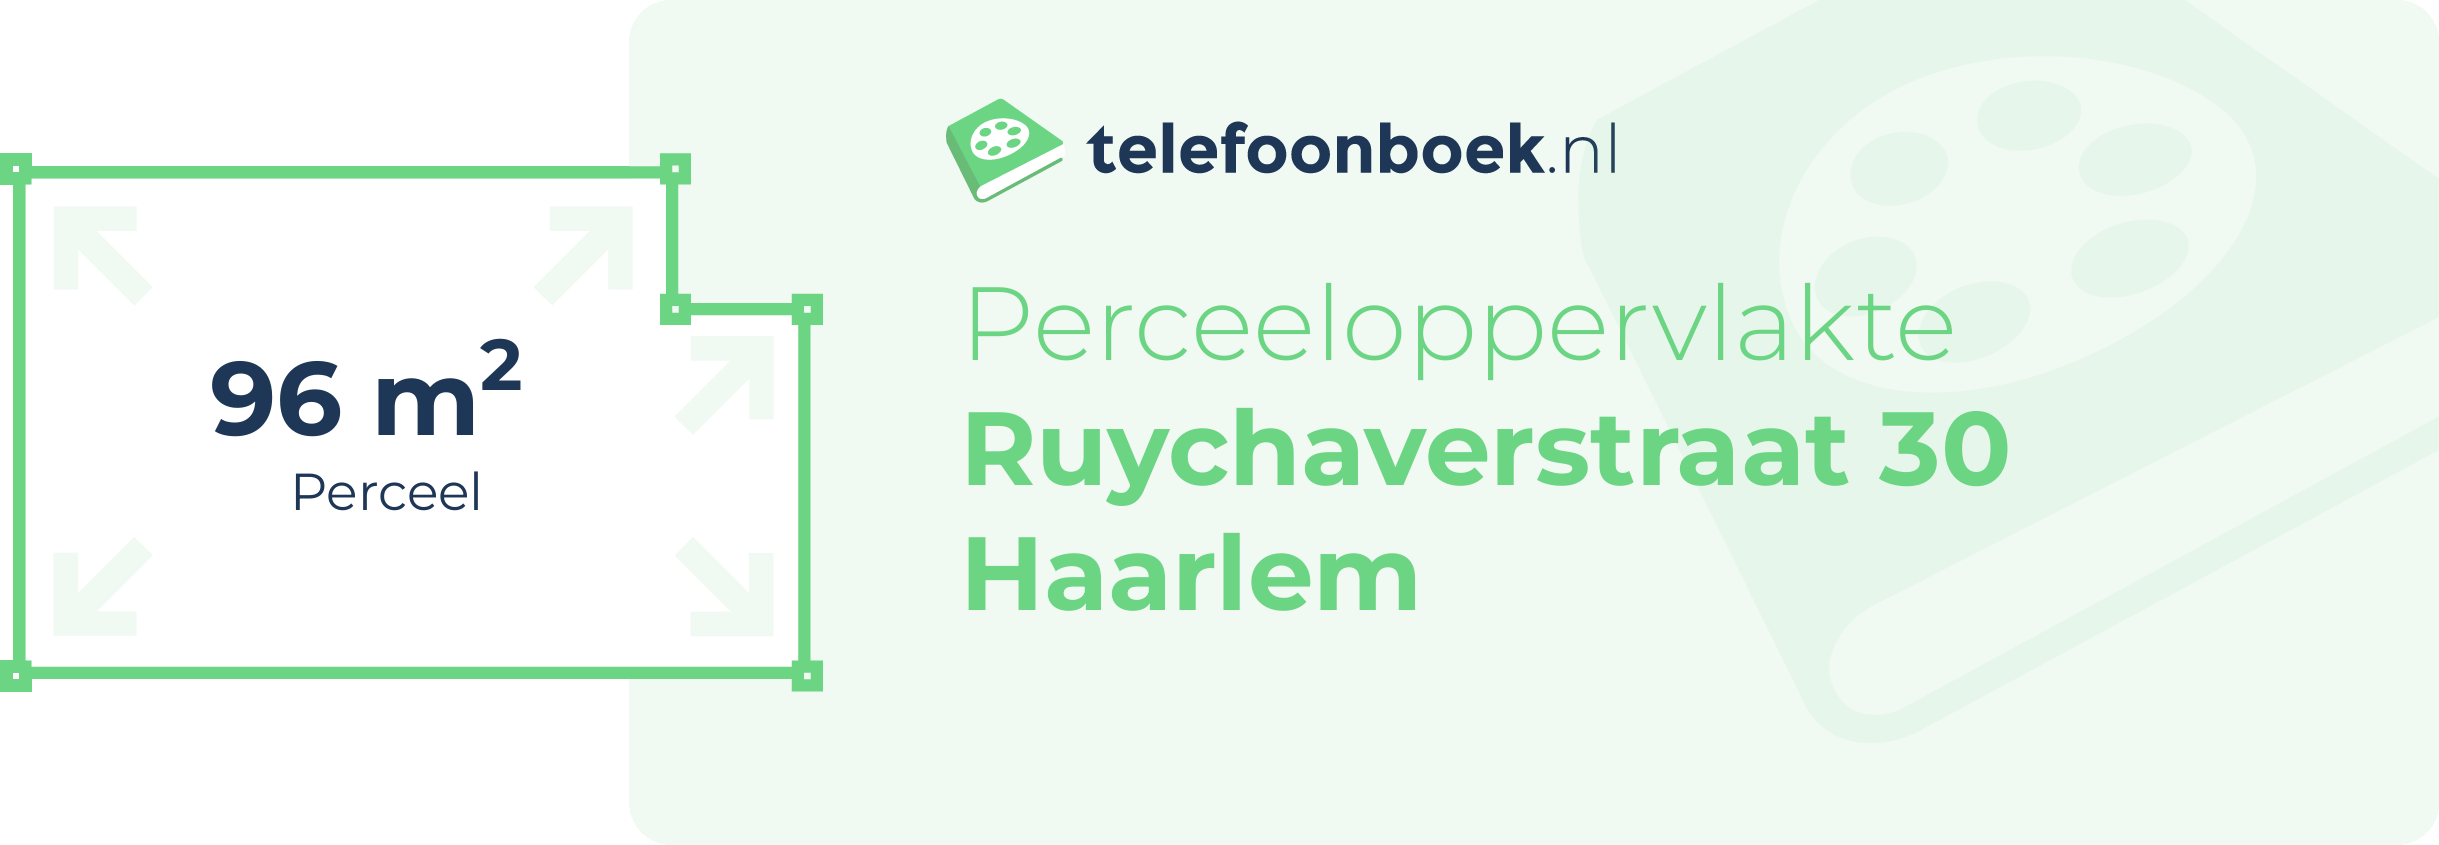 Perceeloppervlakte Ruychaverstraat 30 Haarlem